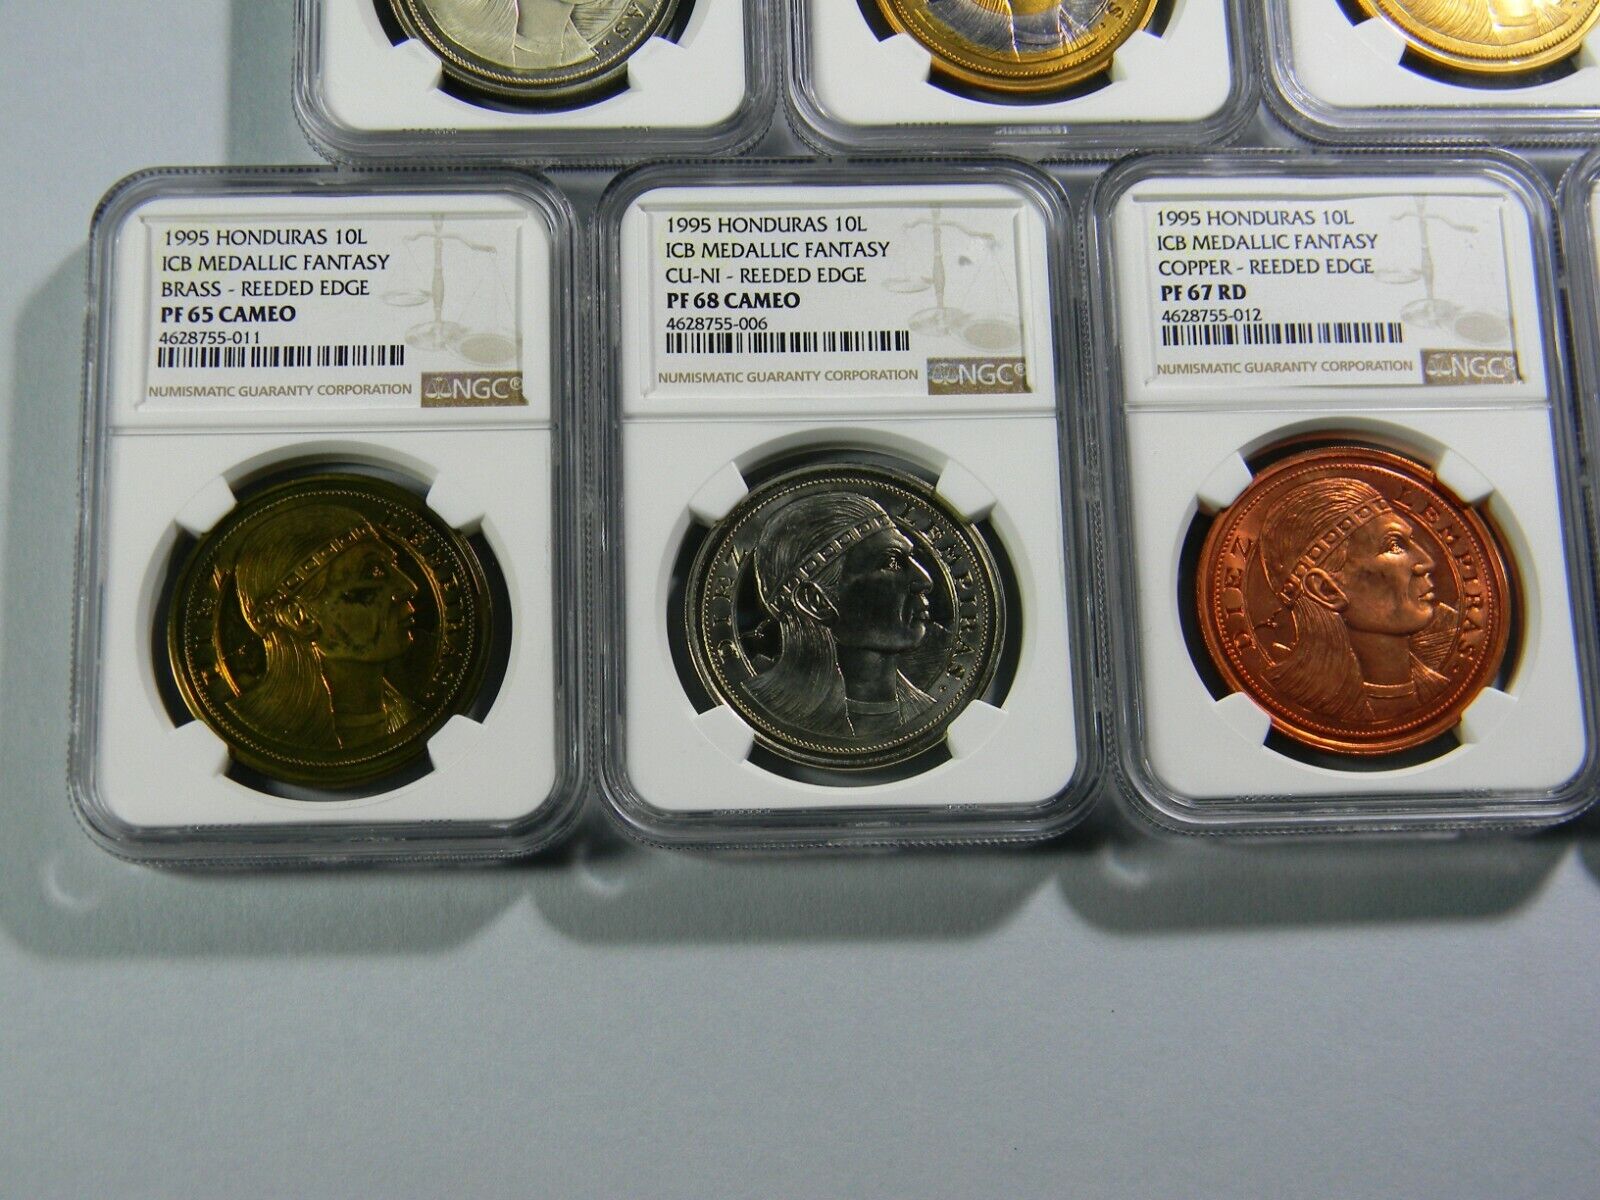 1995 Honduras 10 Lempiras 7 coin Lot NGC Certified  Без бренда - фотография #5